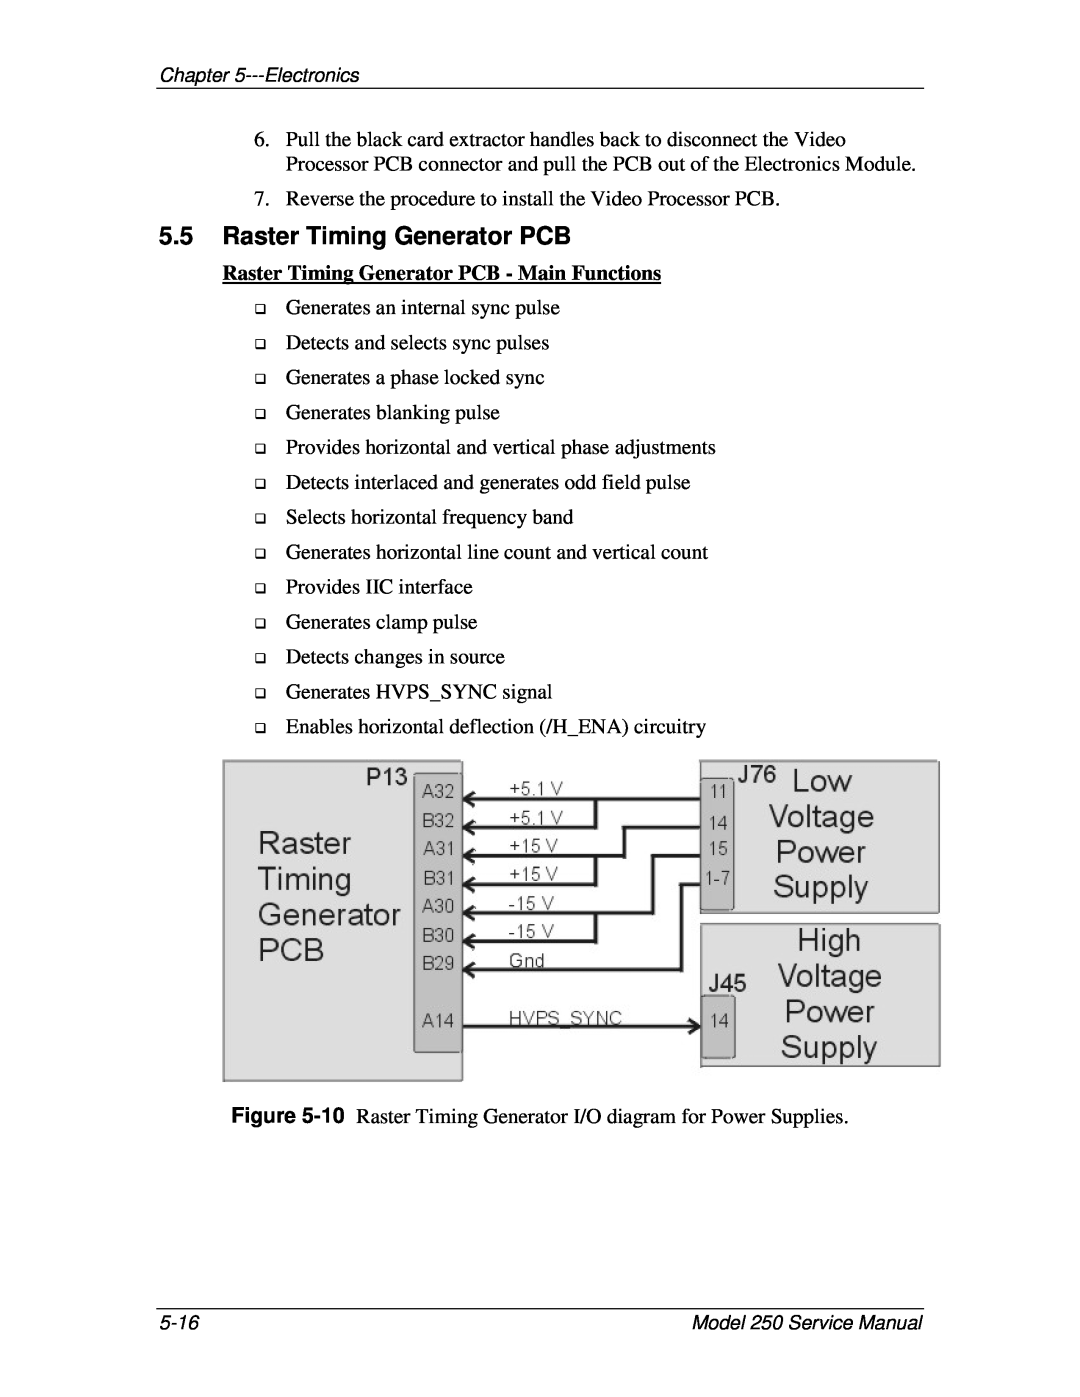 JVC 250 service manual Raster Timing Generator PCB - Main Functions 